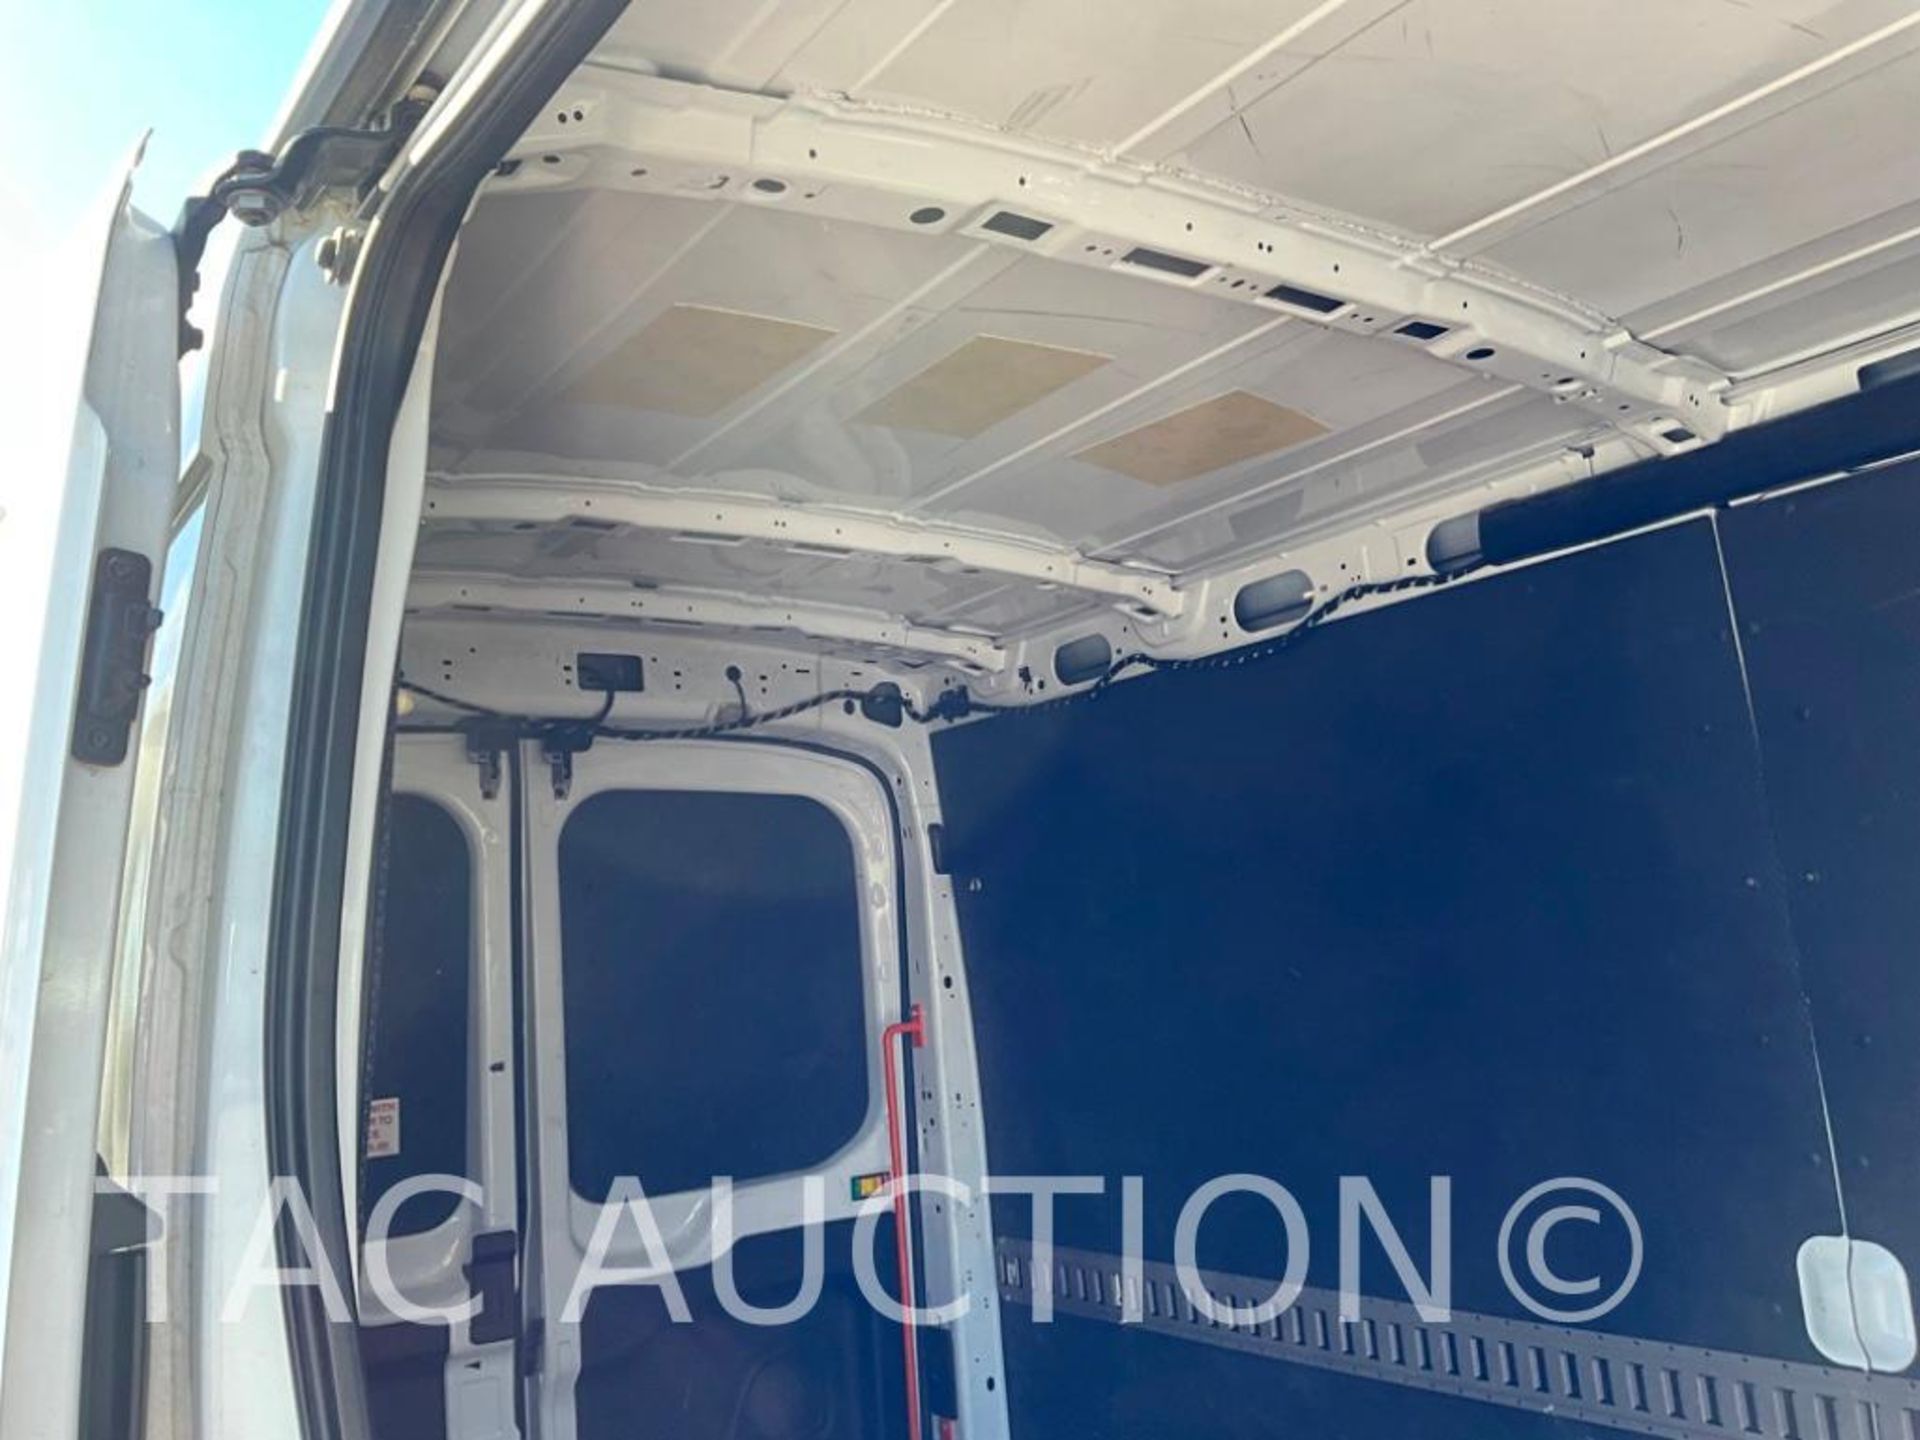 2019 Ford Transit 150 Cargo Van - Image 47 of 52